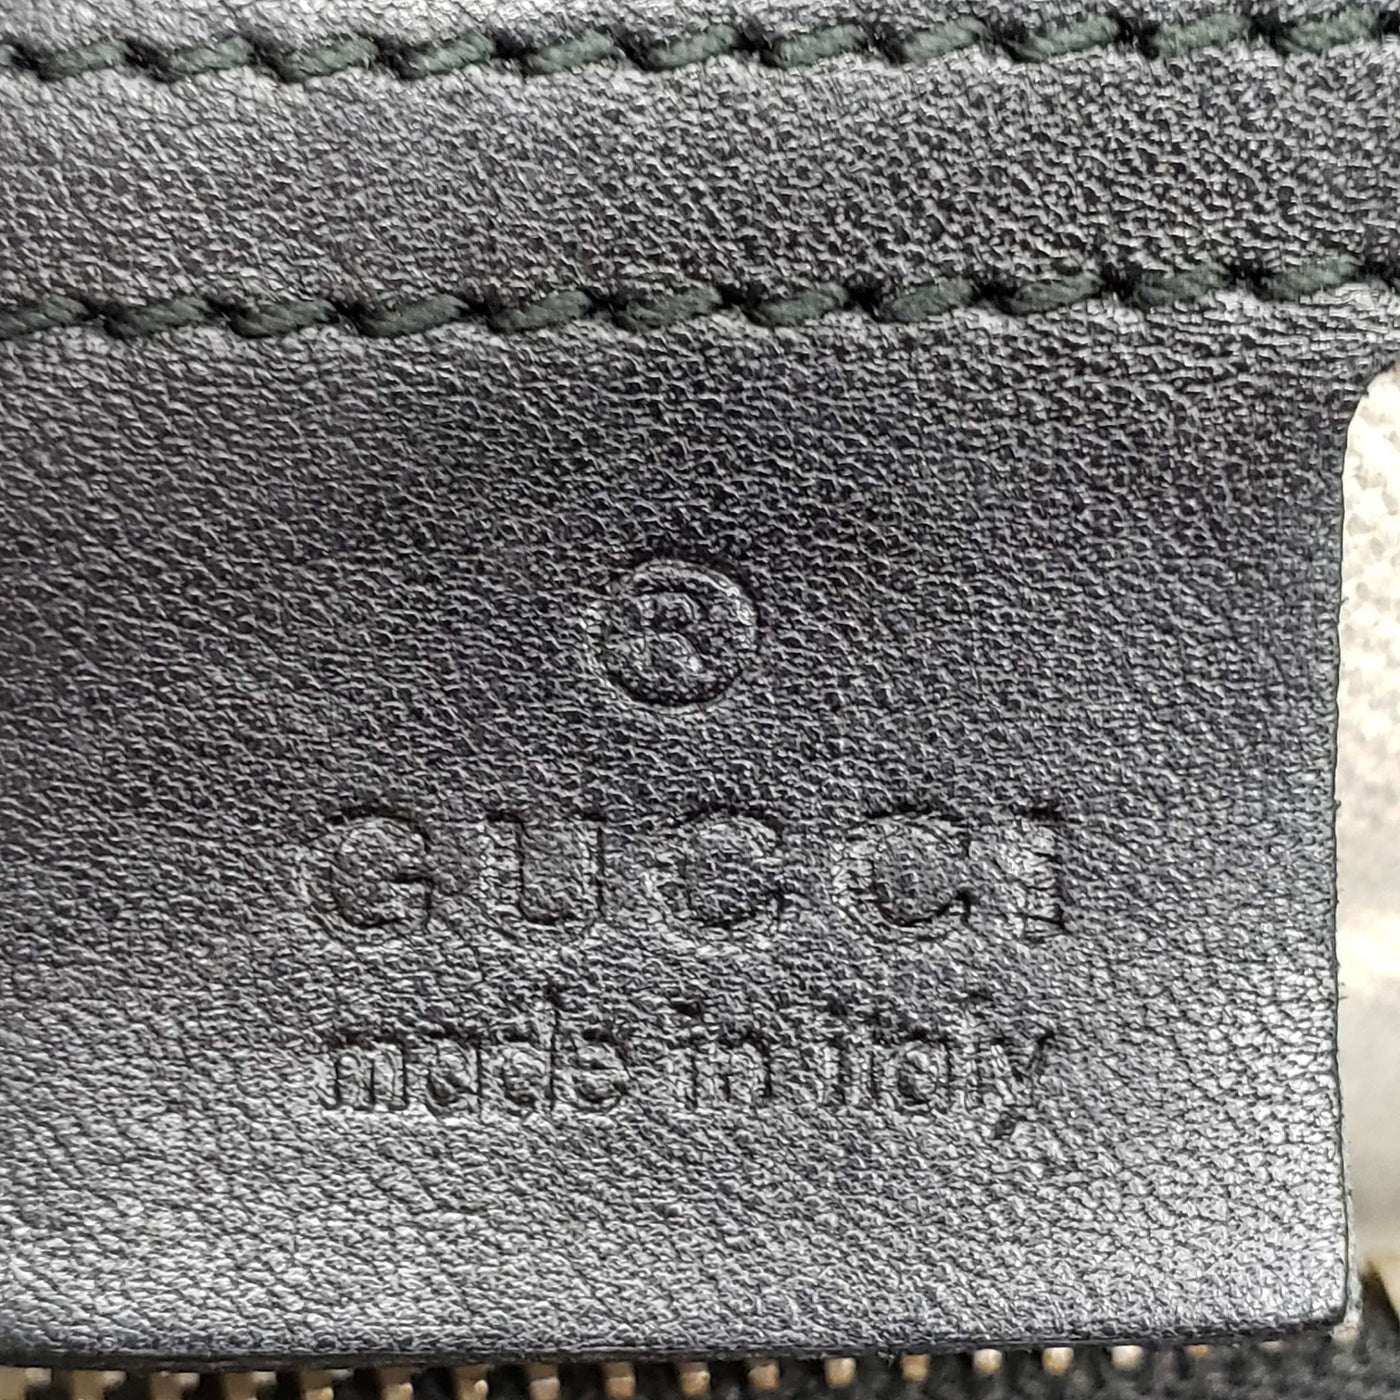 Gucci Guccissima Boston Shoulder Bag | Luxury Cheaper.